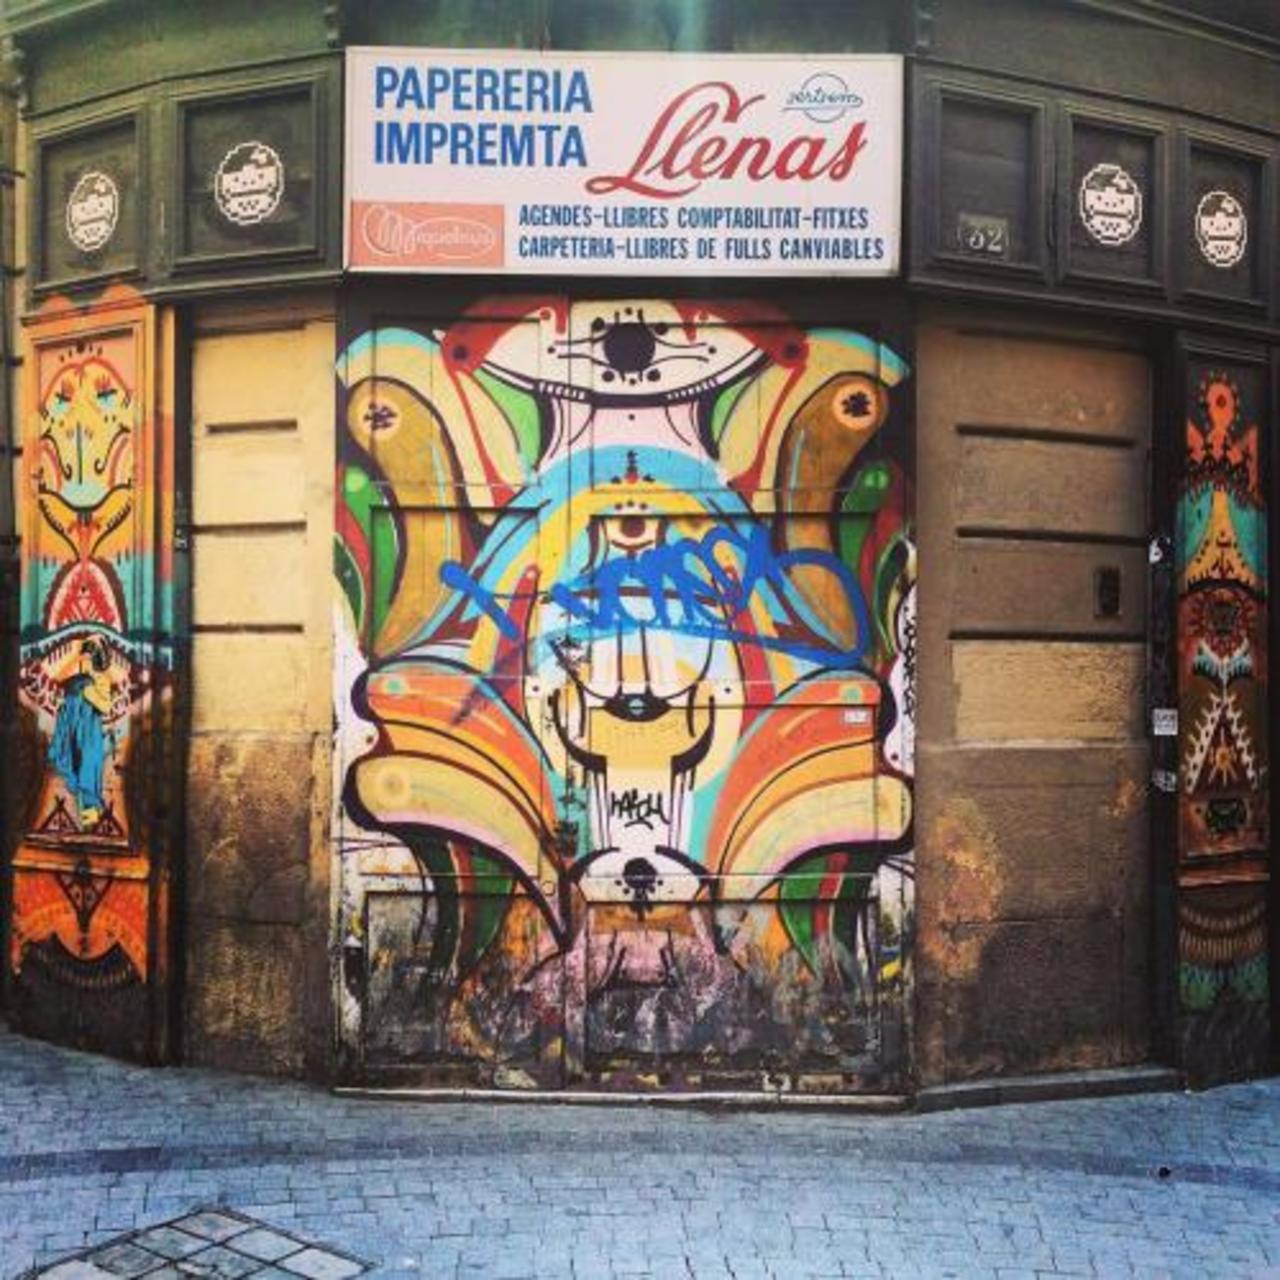 ersoooy🇪🇸 #mural #graffiti #streetart#barcelona #city #art

🇪🇸… http://streetiam1.tumblr.com/post/129329849781 http://t.co/nKWLjLGm8C https://goo.gl/7kifqw